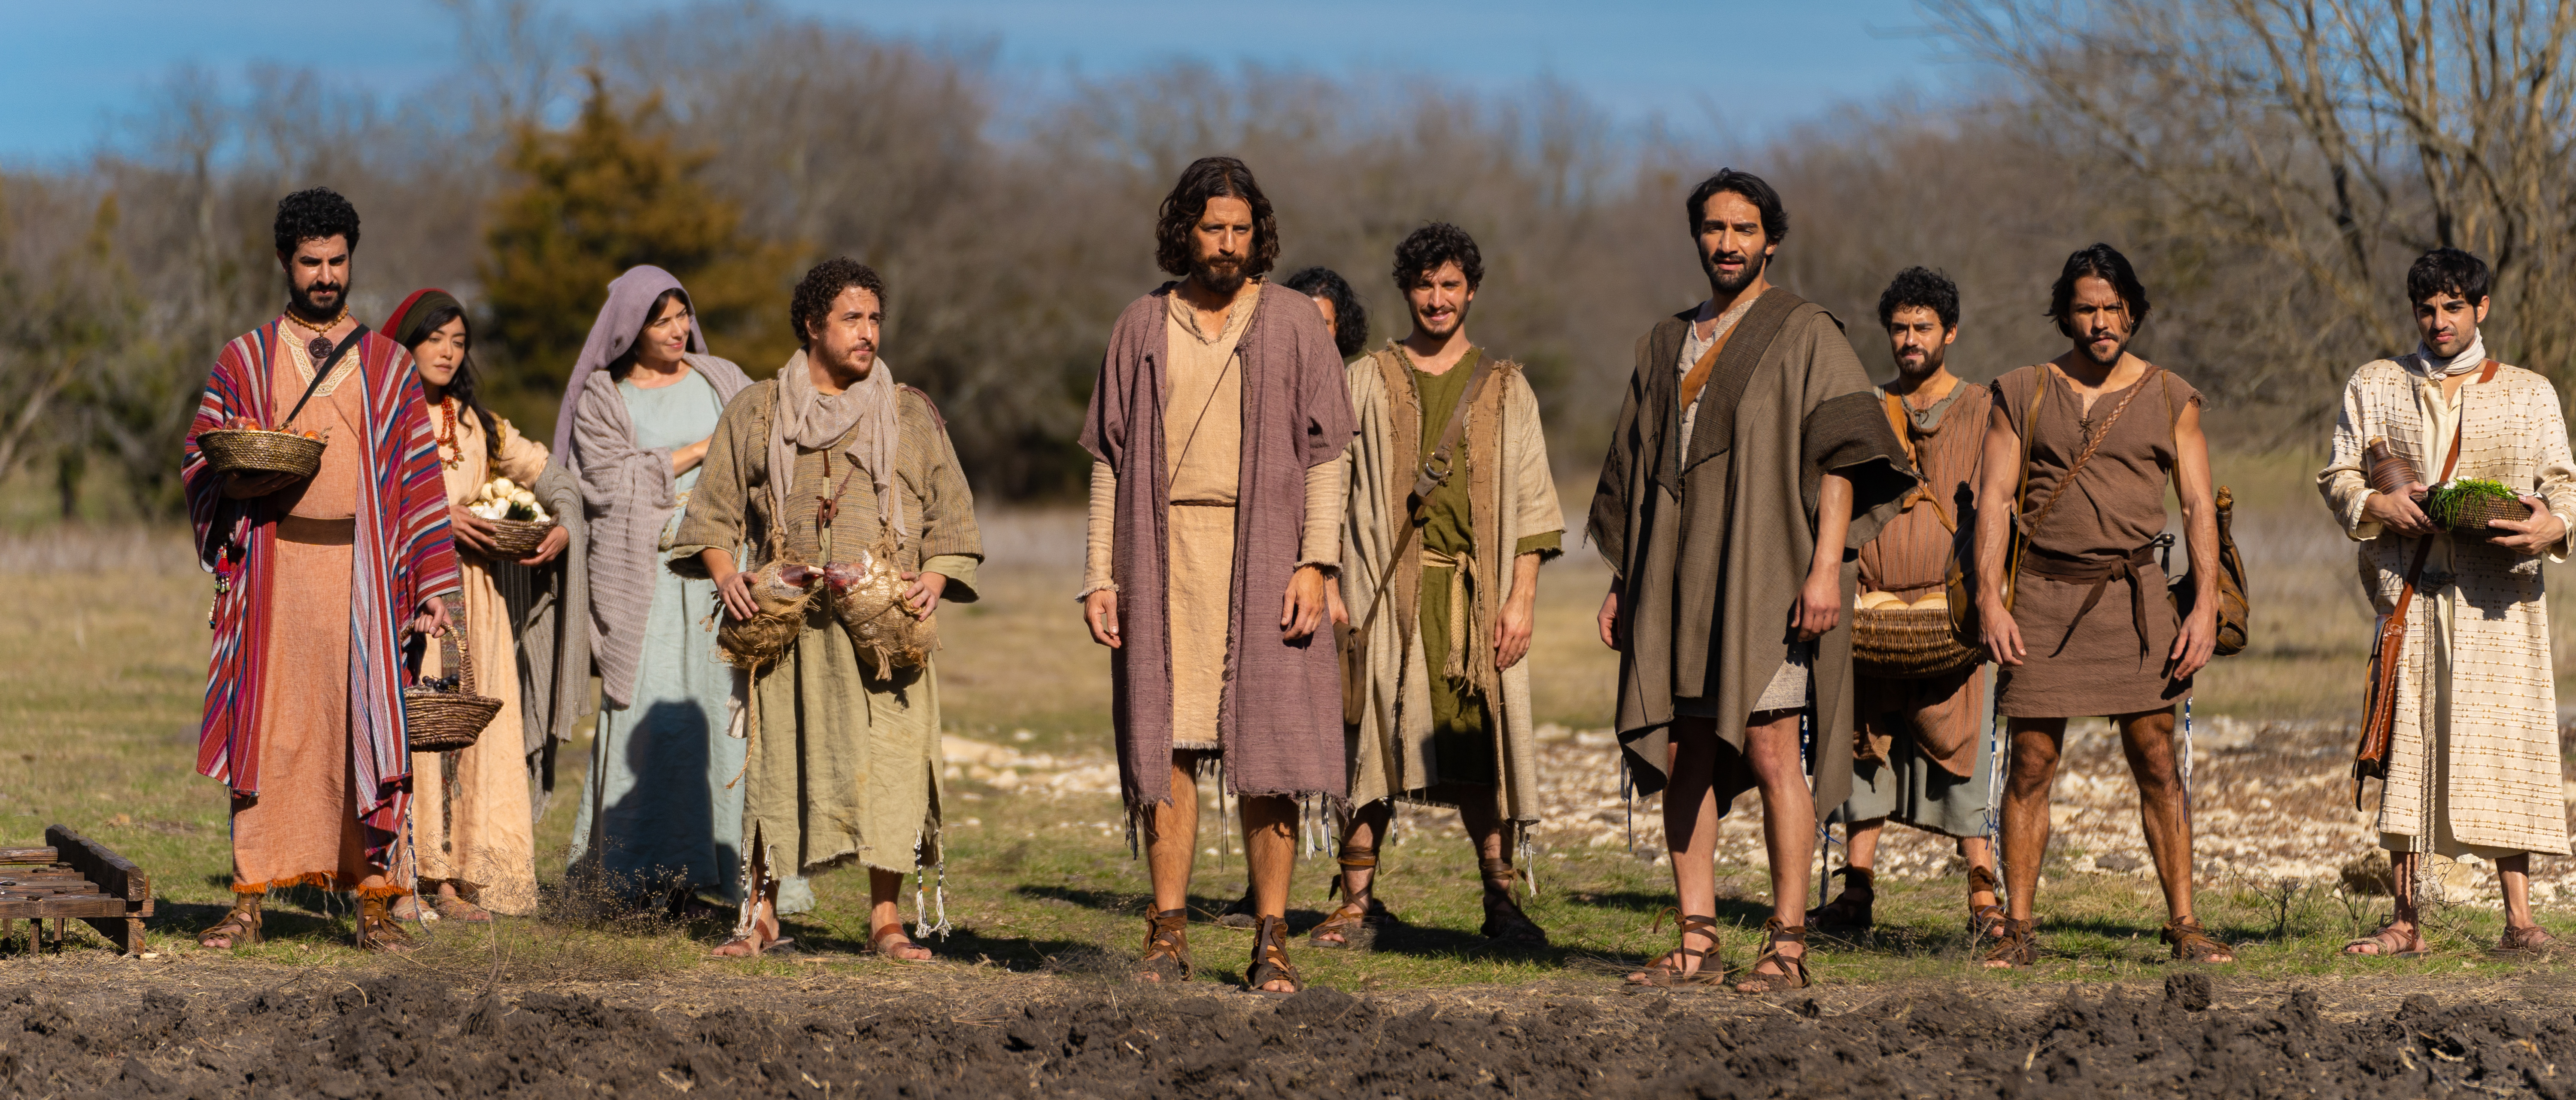 Série cristã The Chosen estreia nas telas da Netflix